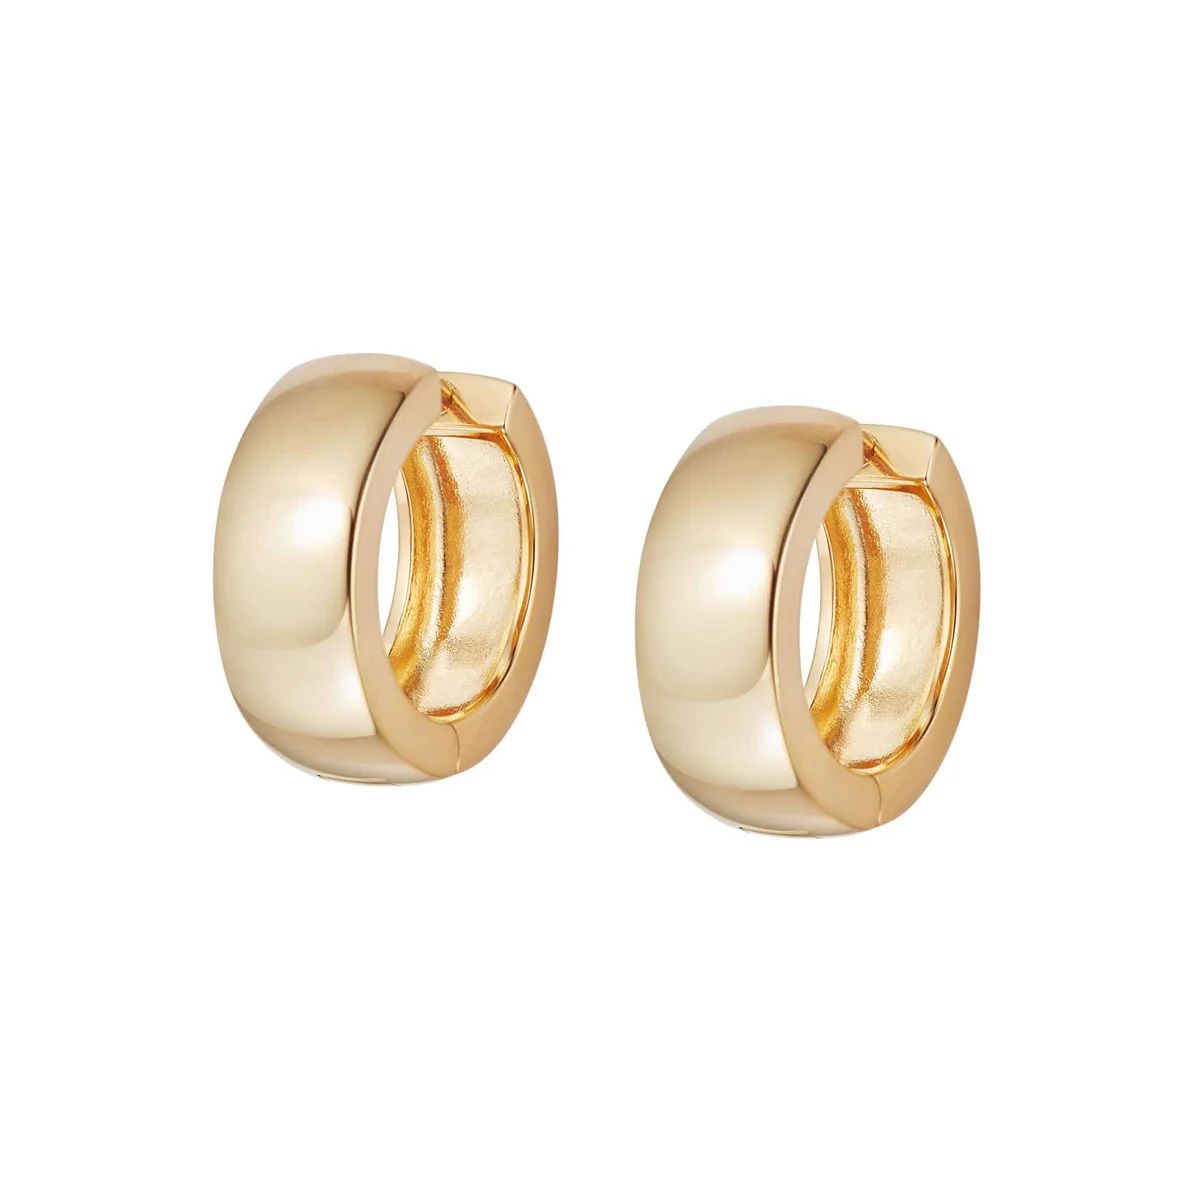 Estée Lalonde Maxi Bold Hoop Earrings 18ct Gold Plate | Daisy London Jewellery